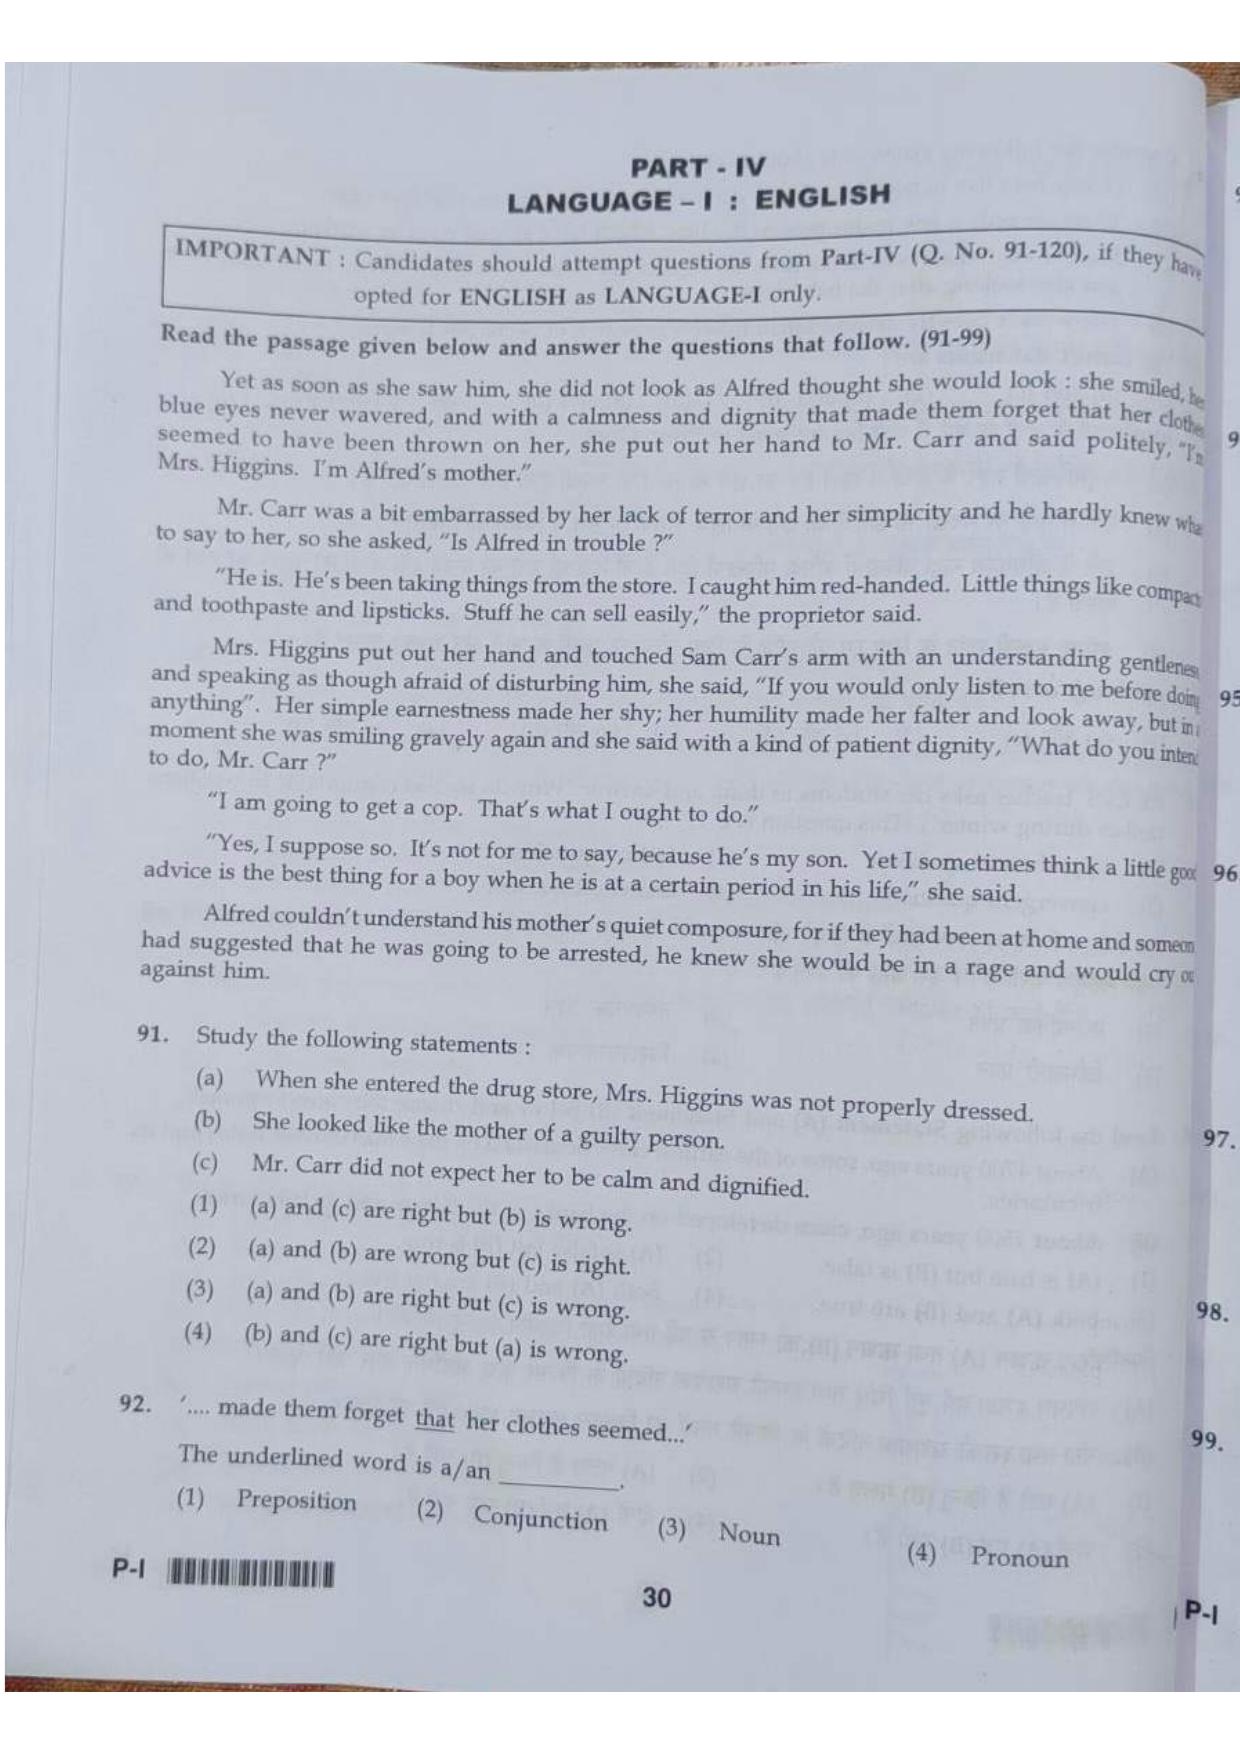 ctet paper 1 question paper SET K - Page 30